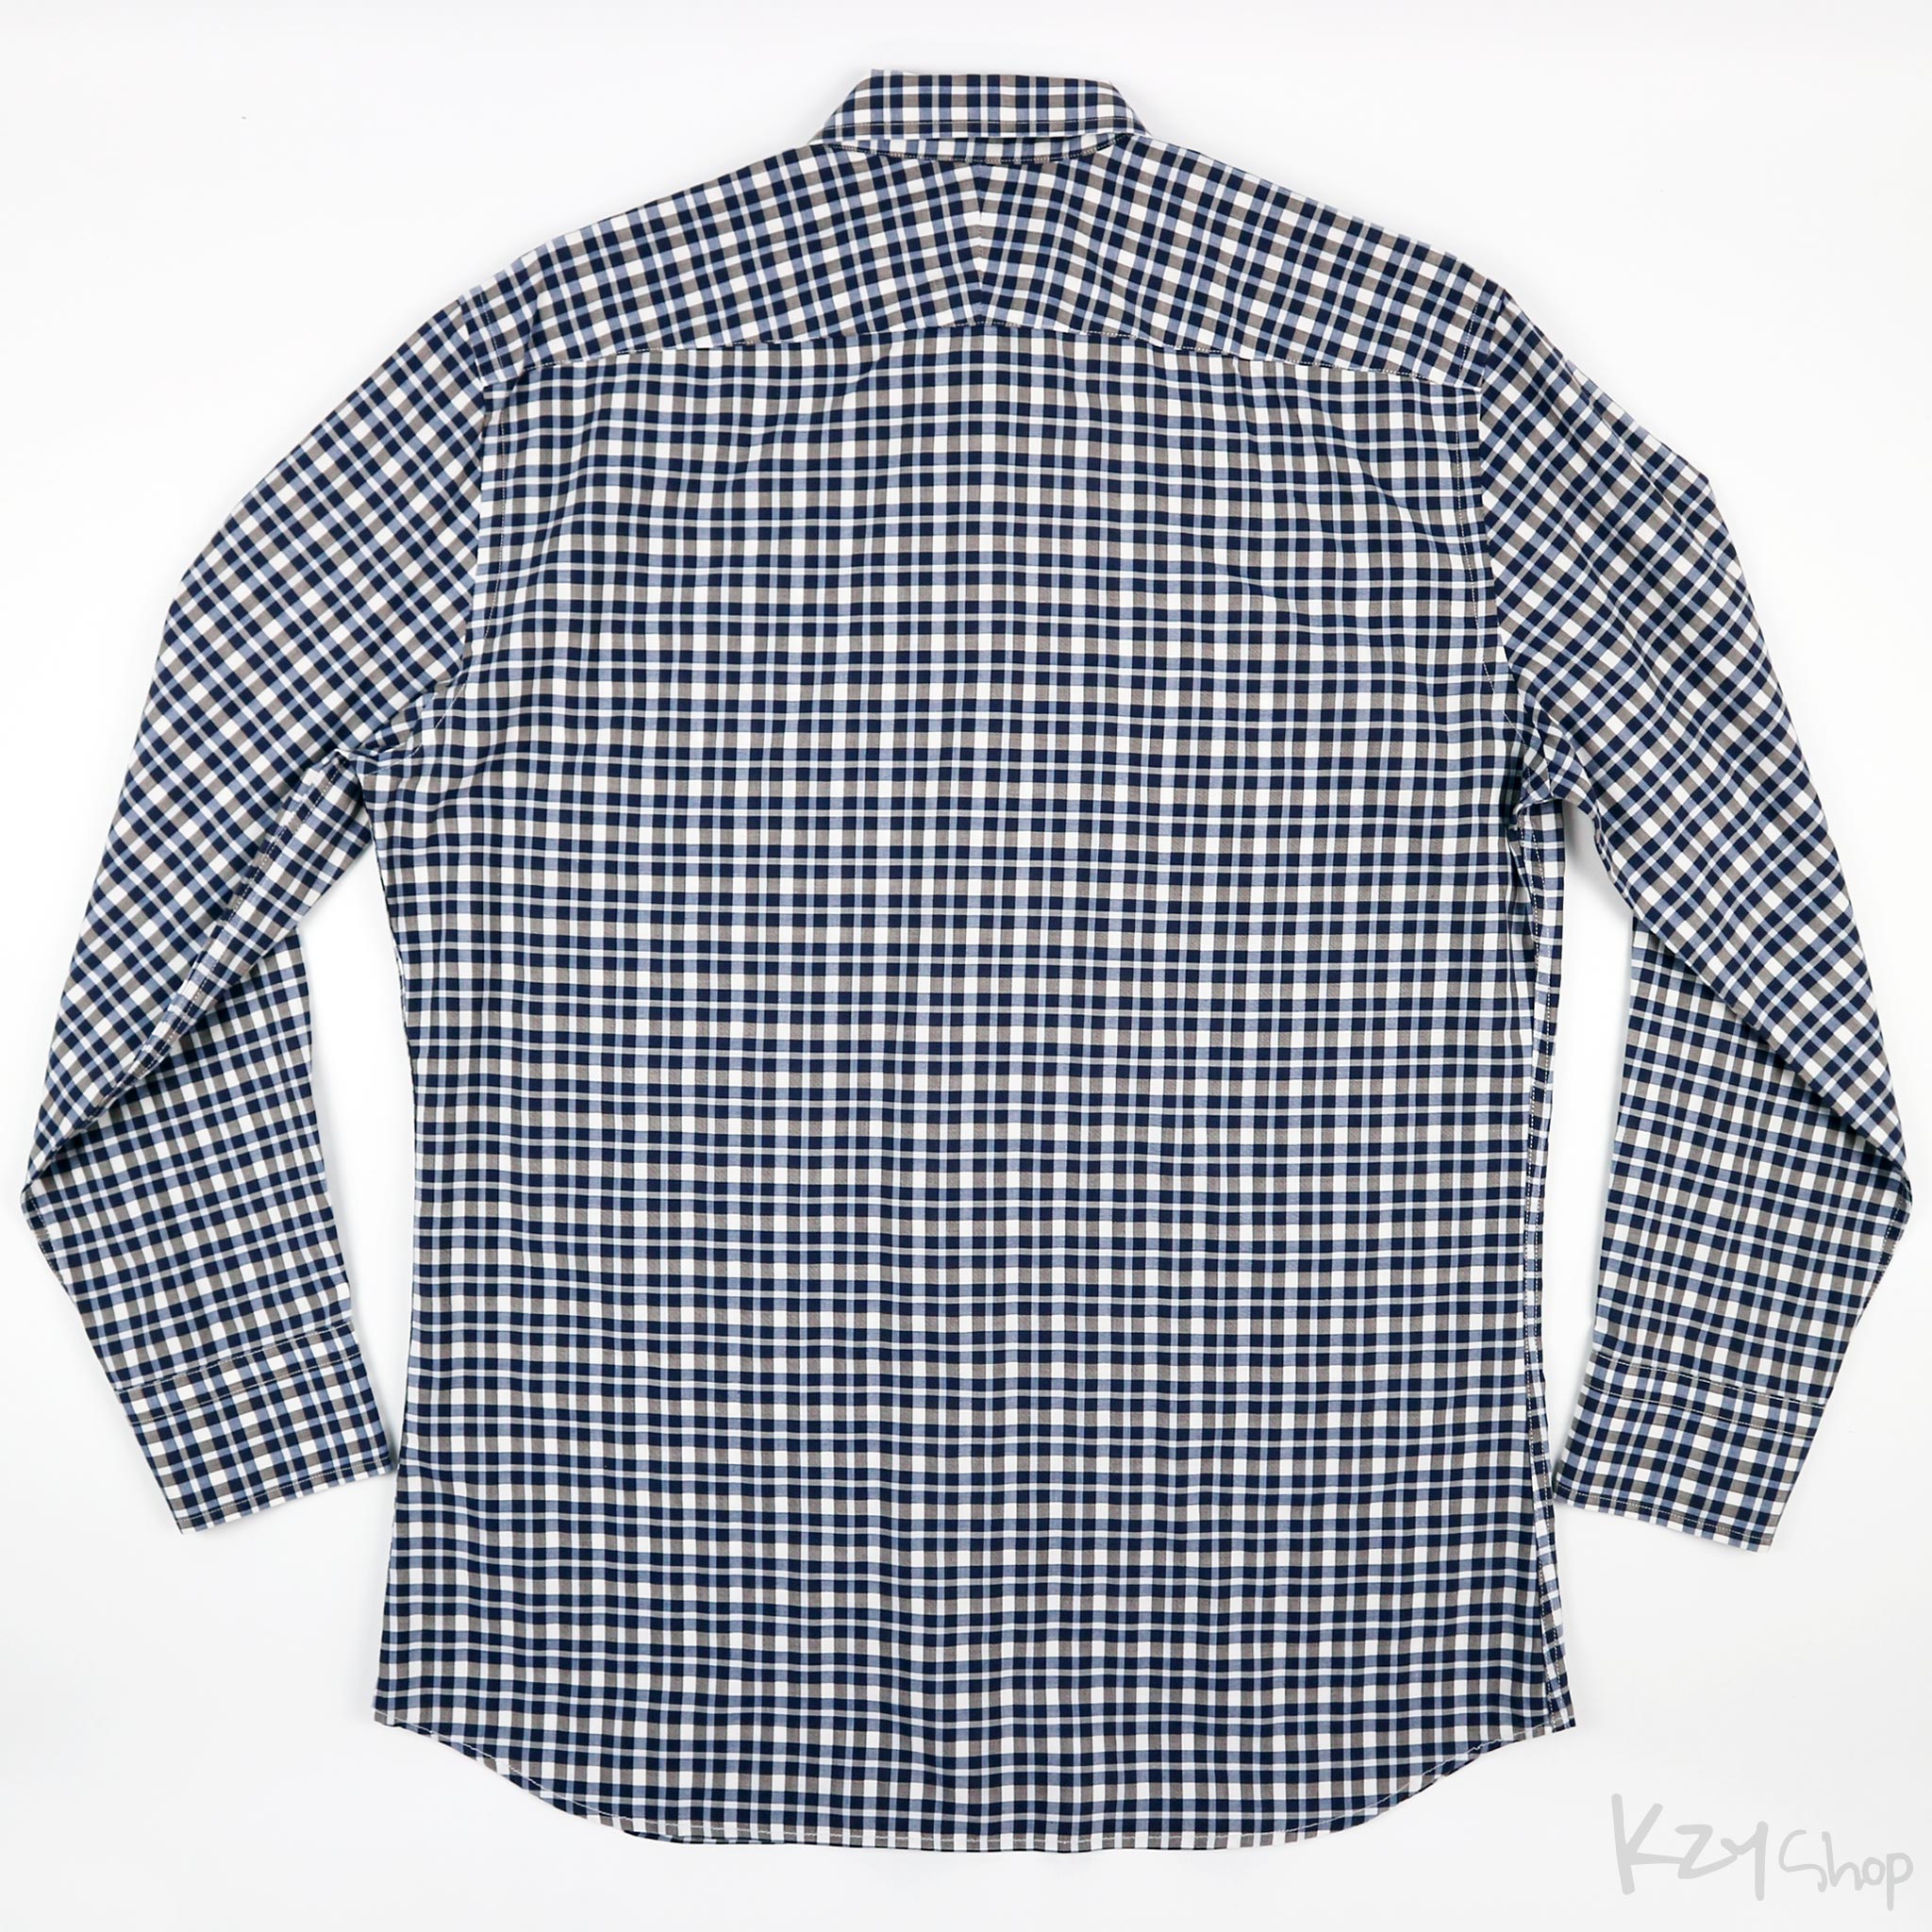 Paul Smith - Long Sleeve Shirt